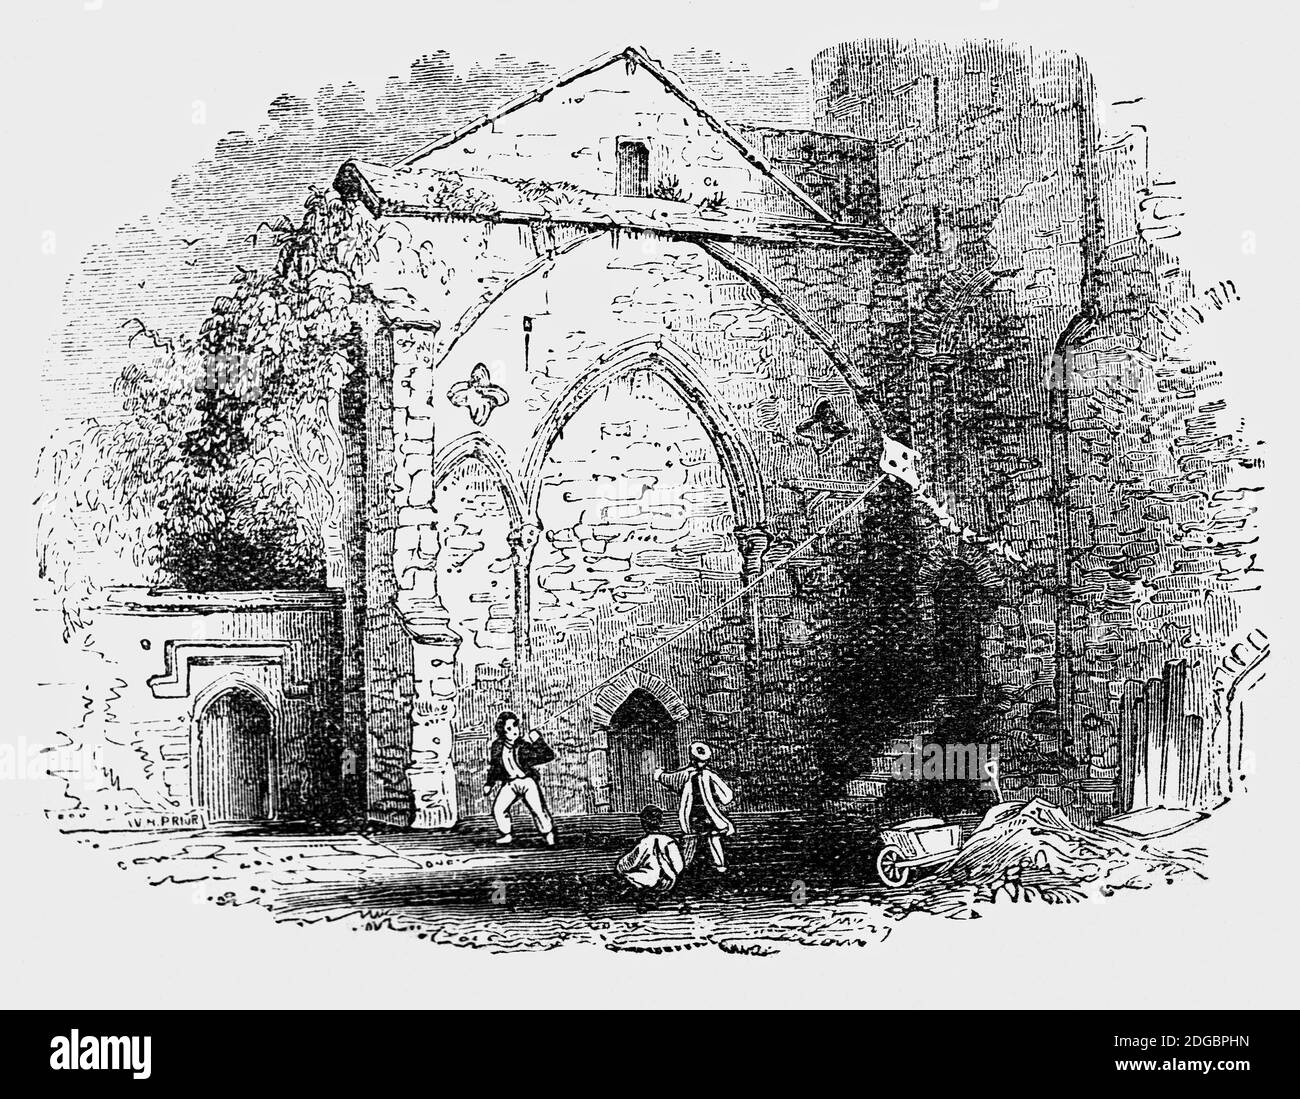 Ein Blick aus dem 19. Jahrhundert auf junge Jungen, die einen Drachen auf dem Gelände der Tewkesbury Abbey aus dem 12. Jahrhundert in Gloucestershire fliegen. Die schöne normannische Abteikirche war ursprünglich Teil eines Klosters, das von König Heinrich VIII. Vor der Auflösung der Klöster gerettet wurde, nachdem sie von den Stadtbewohnern für den Preis des Bleis auf dem Dach gekauft wurde, um sie als Pfarrkirche zu nutzen. Die meisten Klostergebäude wurden in dieser Zeit zerstört. Stockfoto